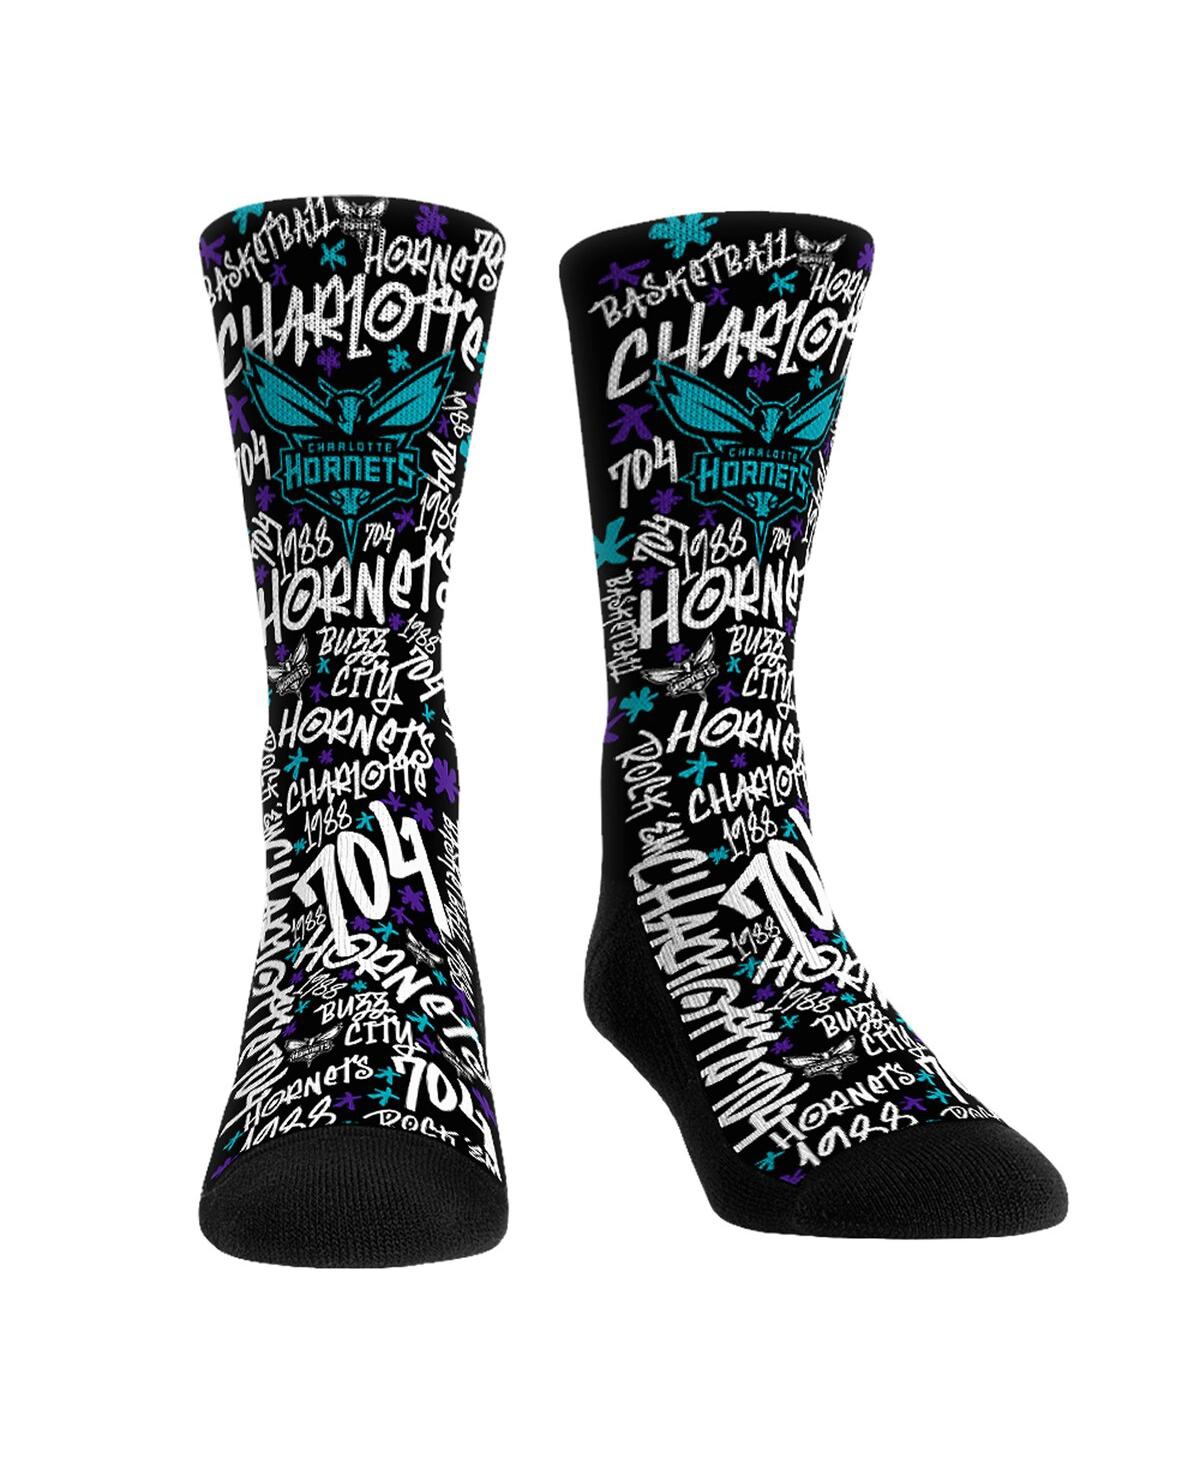 Men's and Women's Rock 'Em Socks Charlotte Hornets Graffiti Crew Socks - Black, White